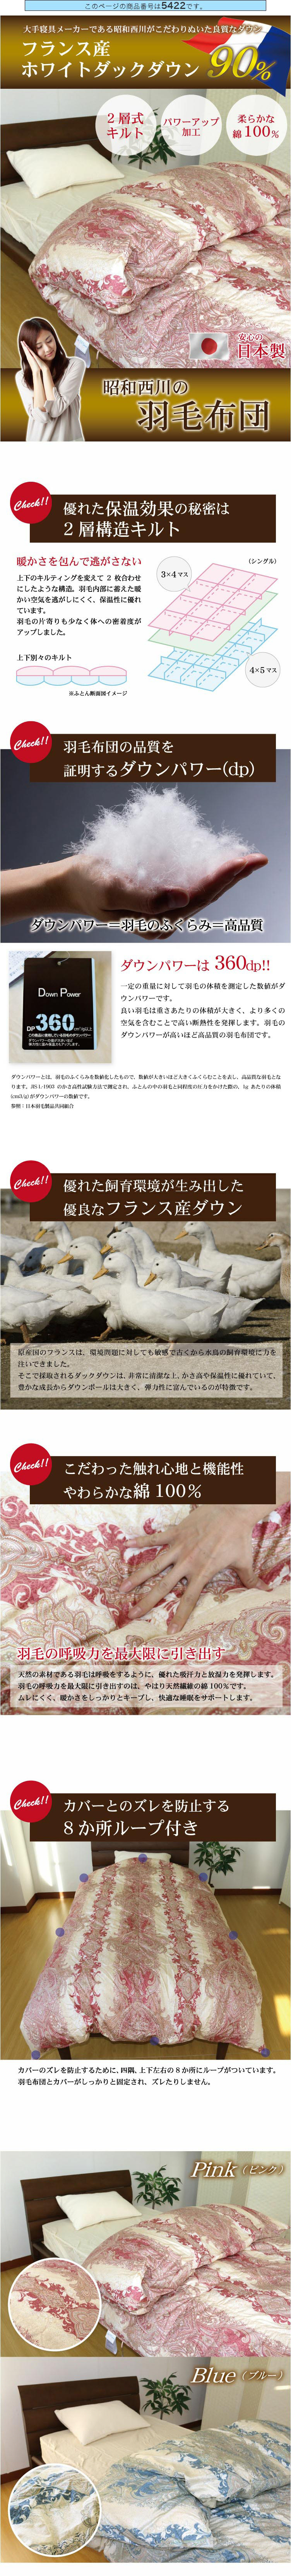 羽毛布団 2層式 昭和西川【送料無料】ダブルロングサイズ 190×210cm